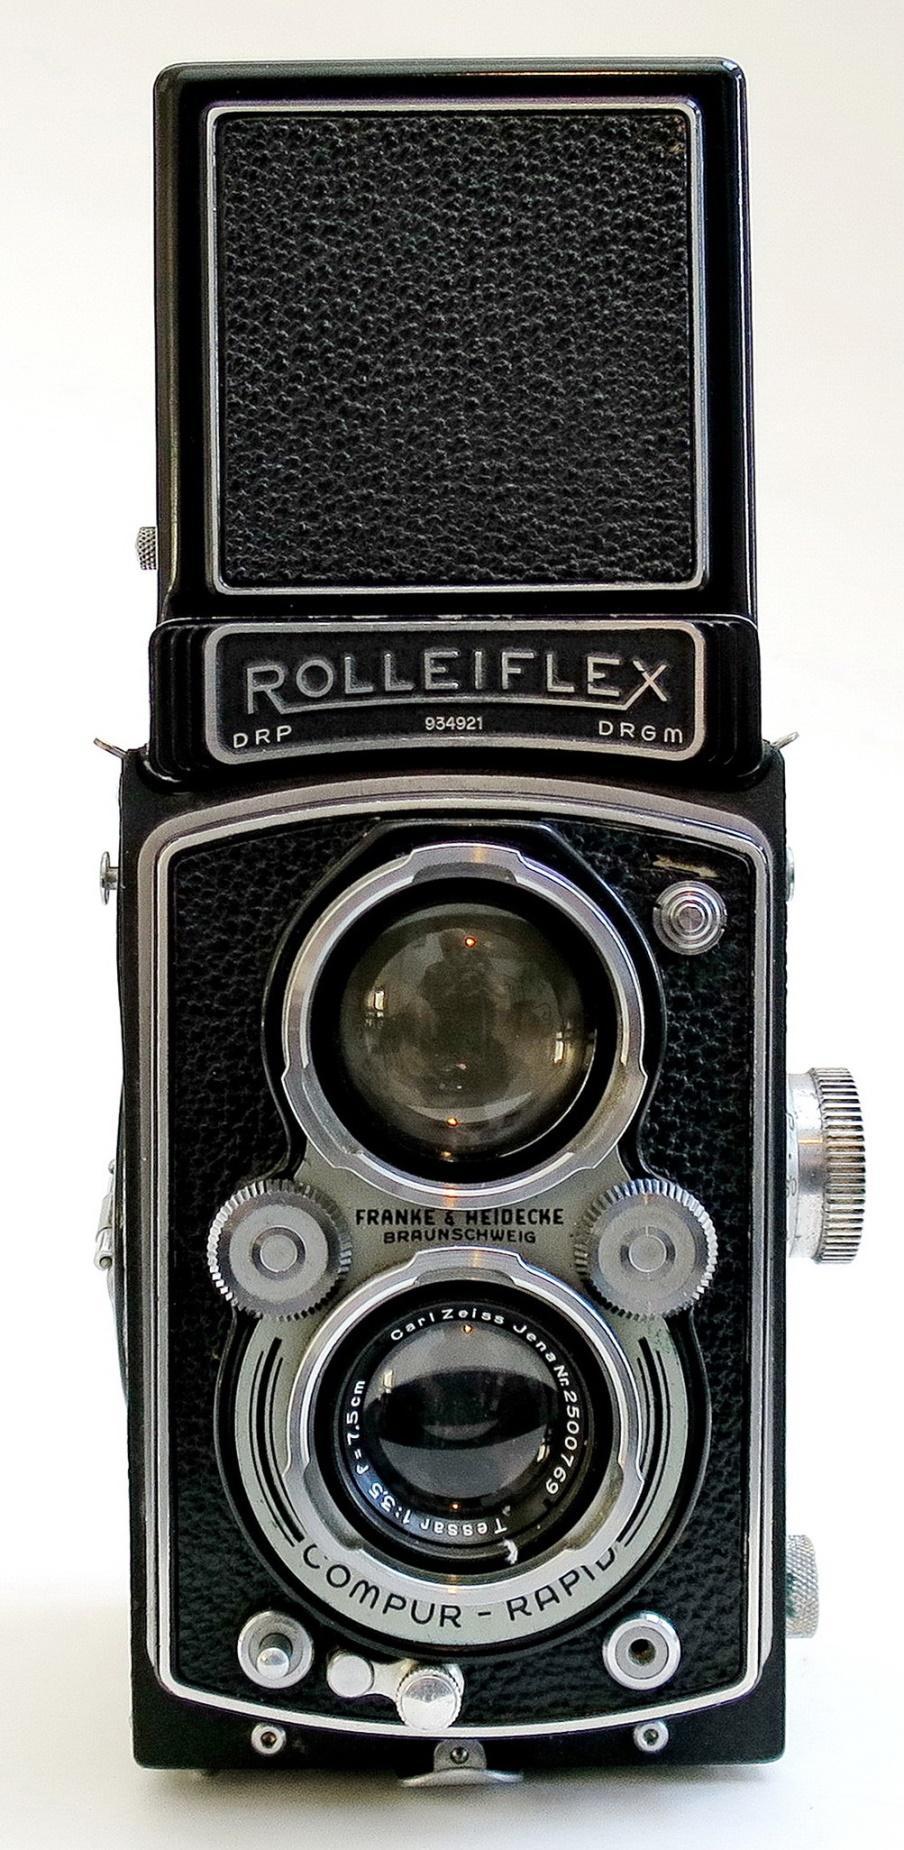 A Franke & Heidecke Rolleiflex Automat Model 2 TLR Camera as